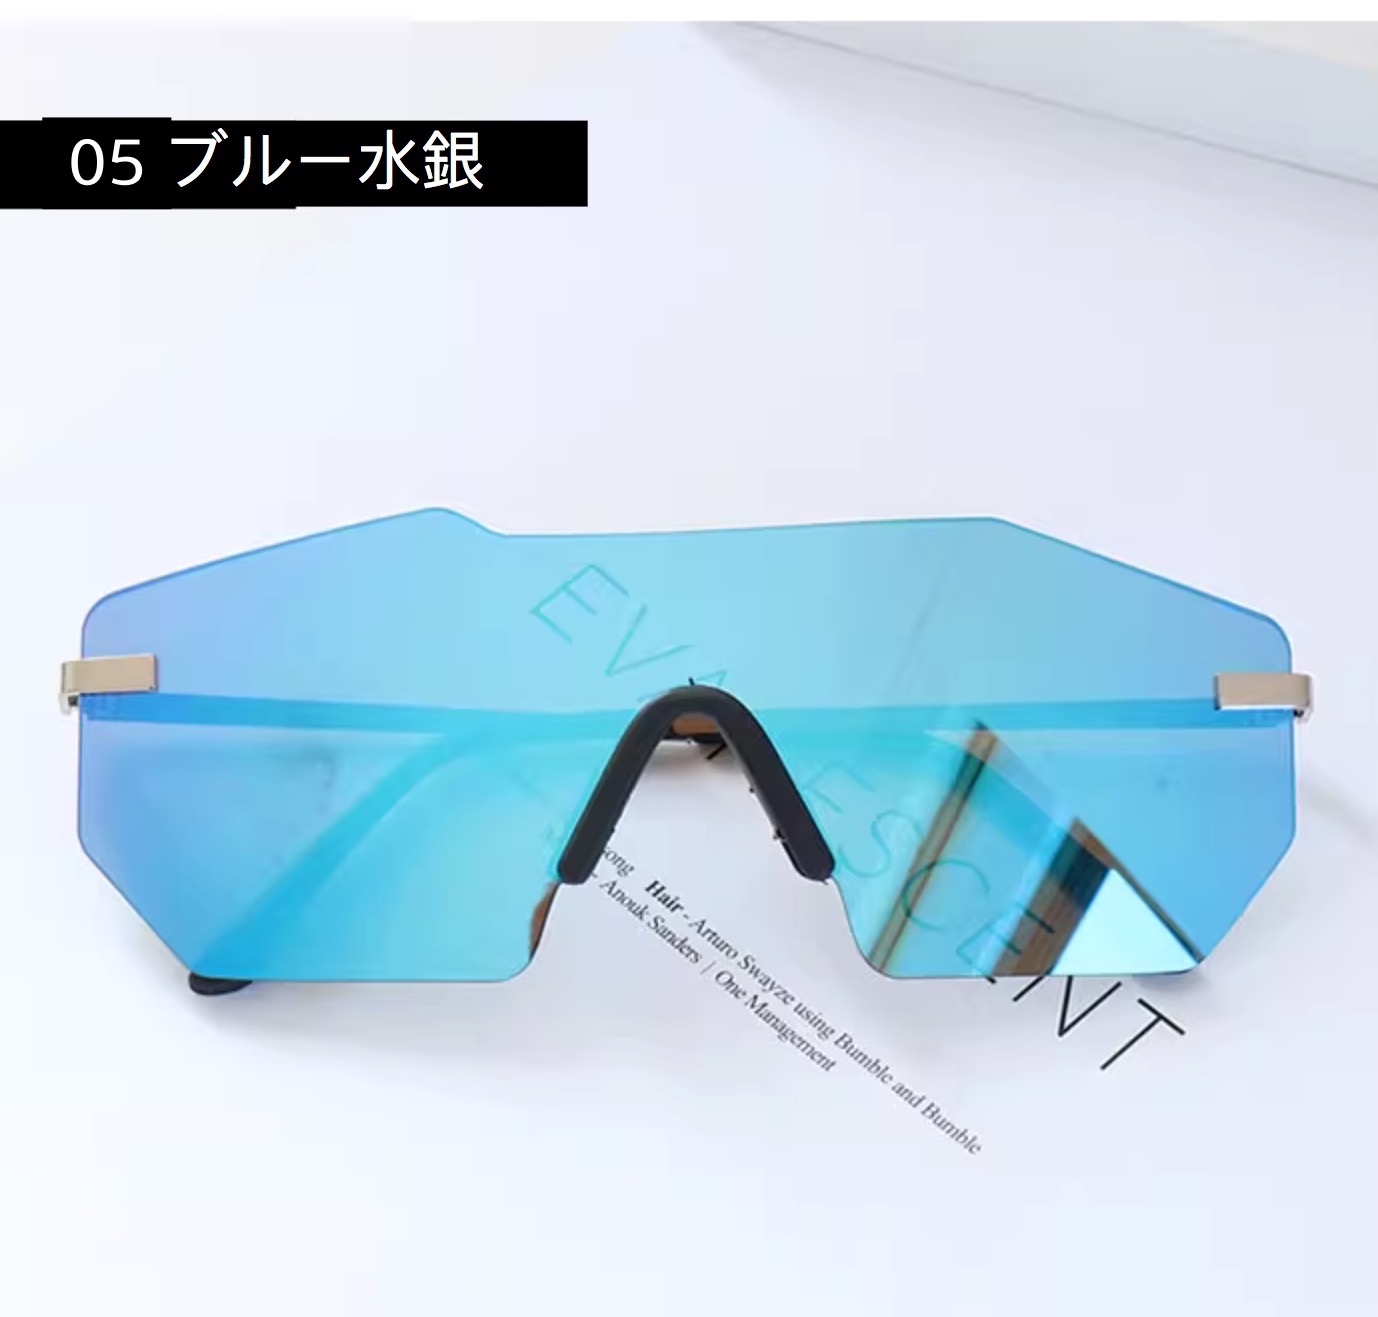 オシャレ偏光サングラス 眼鏡 市場グラデーションカラー